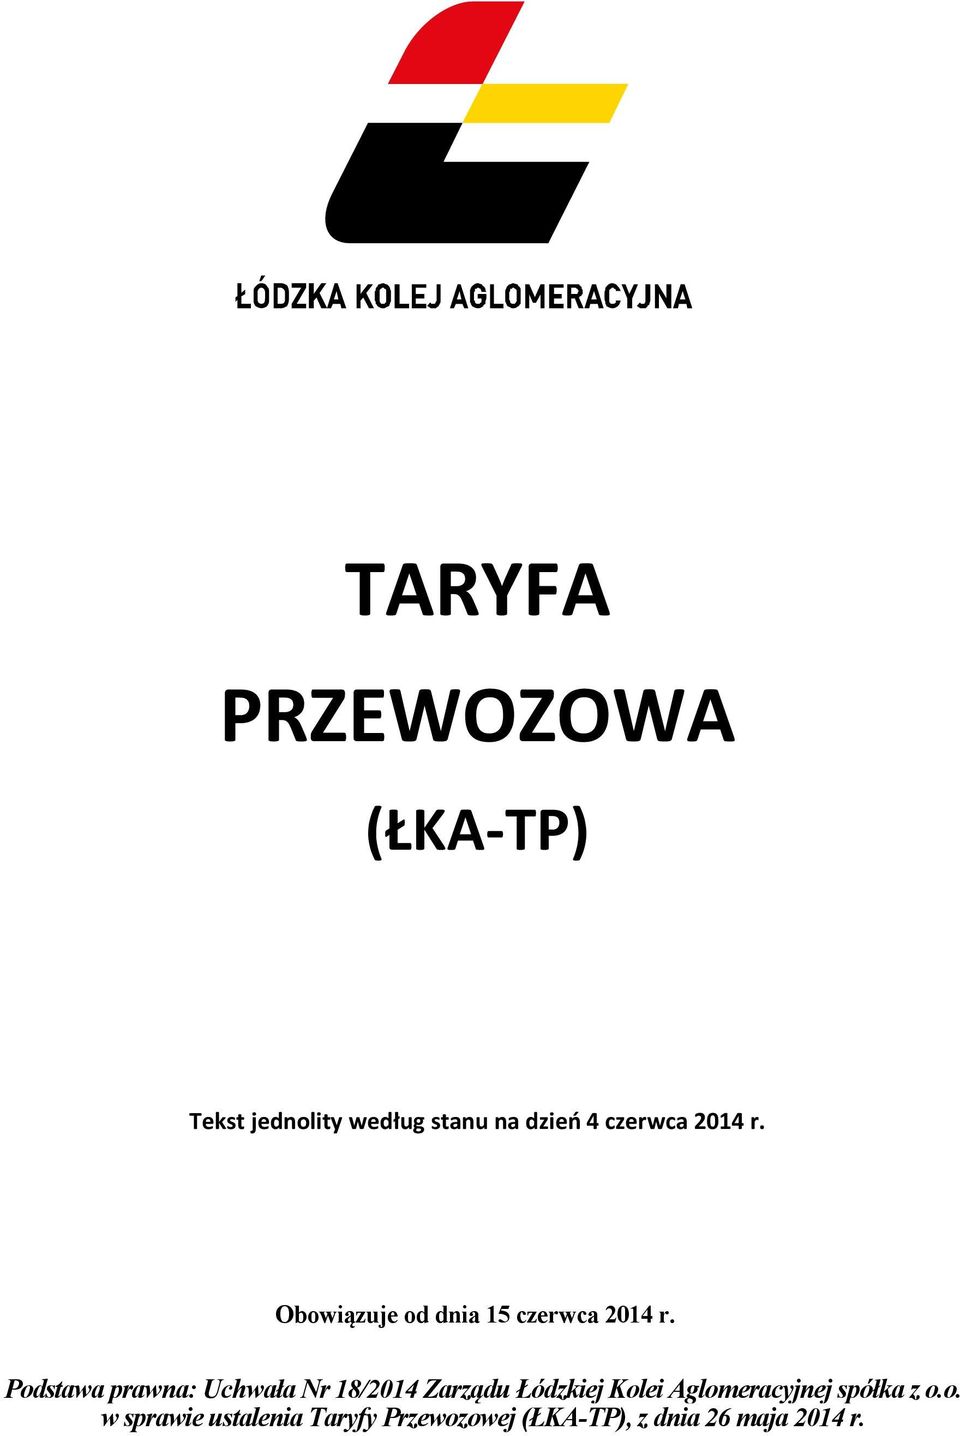 Podstawa prawna: Uchwała Nr 18/2014 Zarządu Łódzkiej Kolei